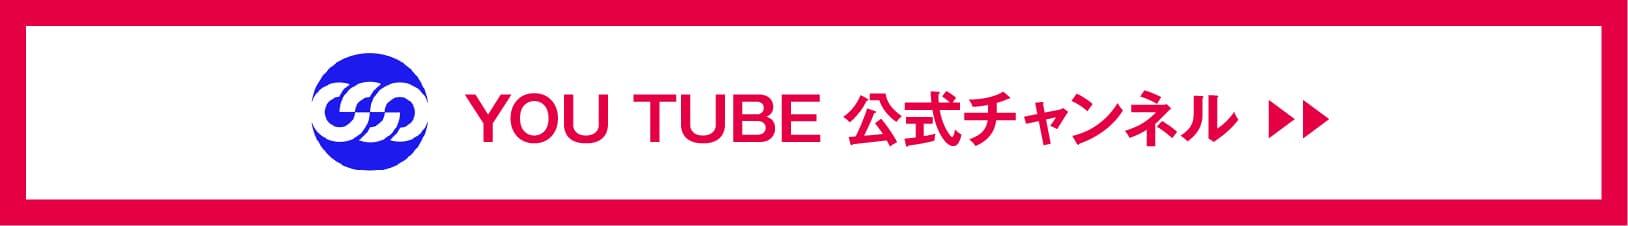 YOUTUBE 公式チャンネル